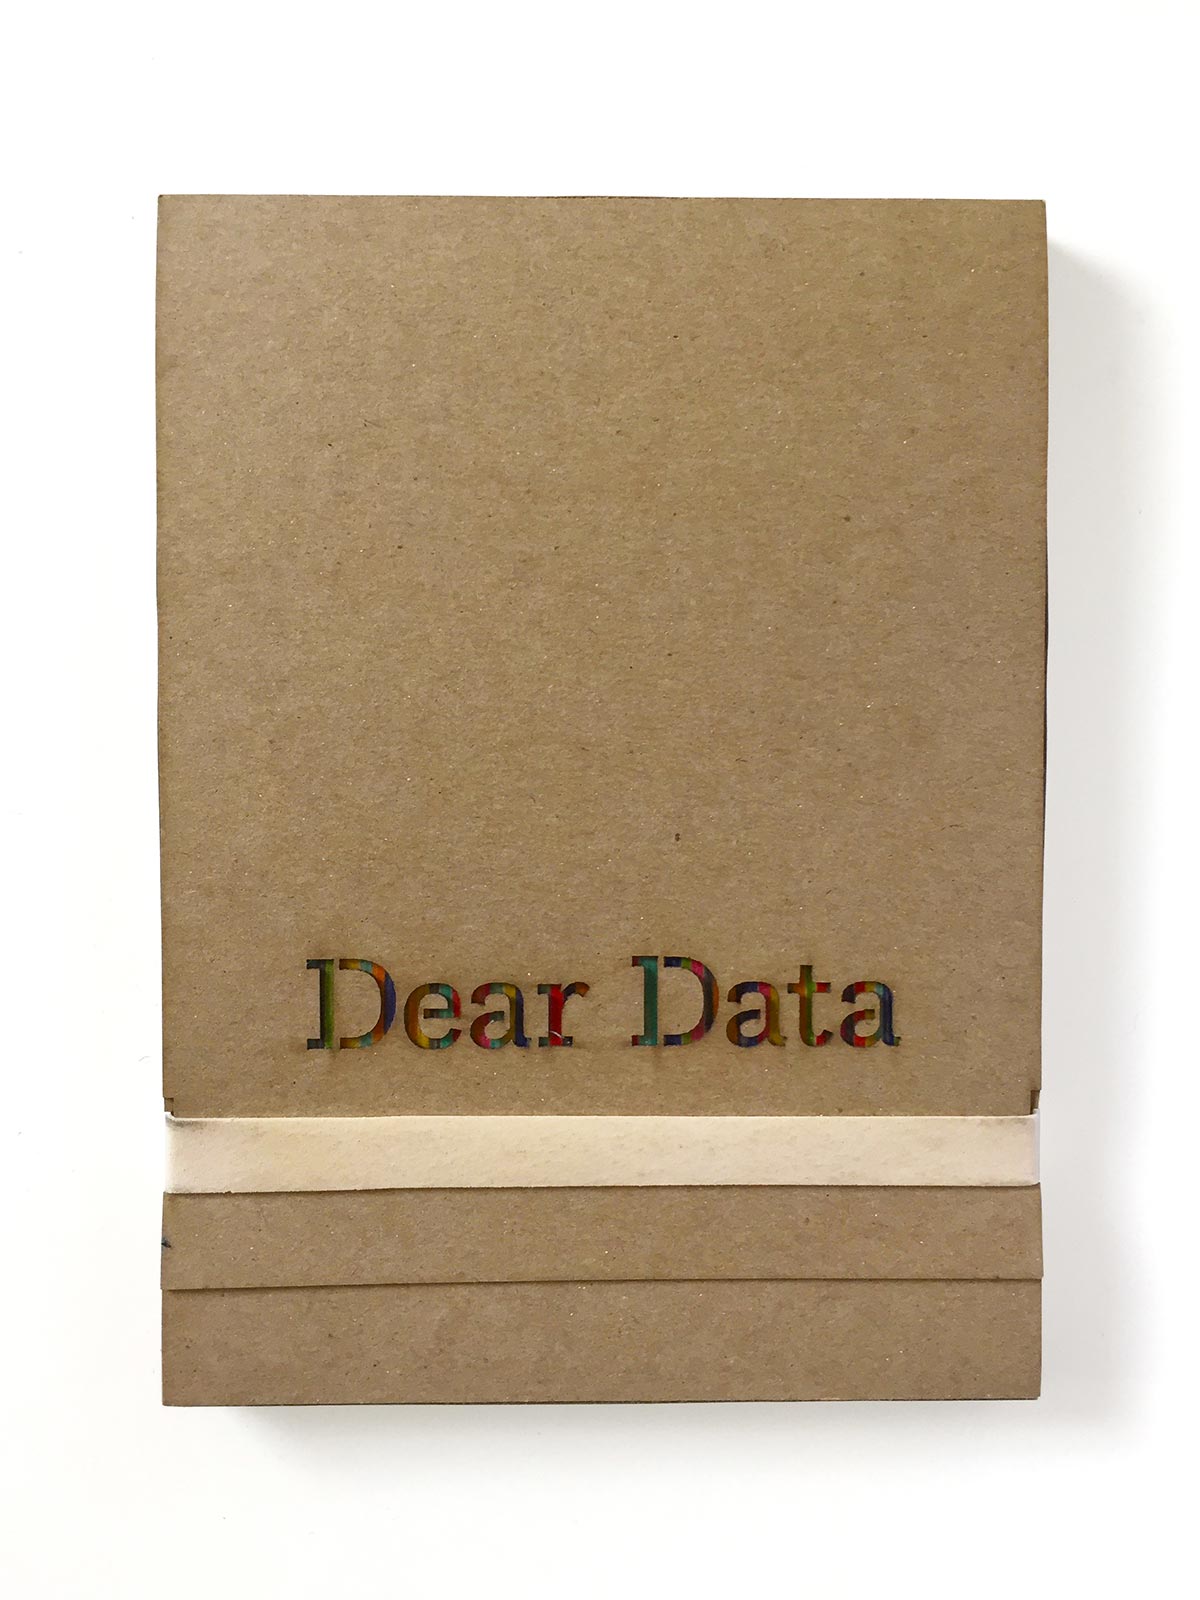 dear data box closed